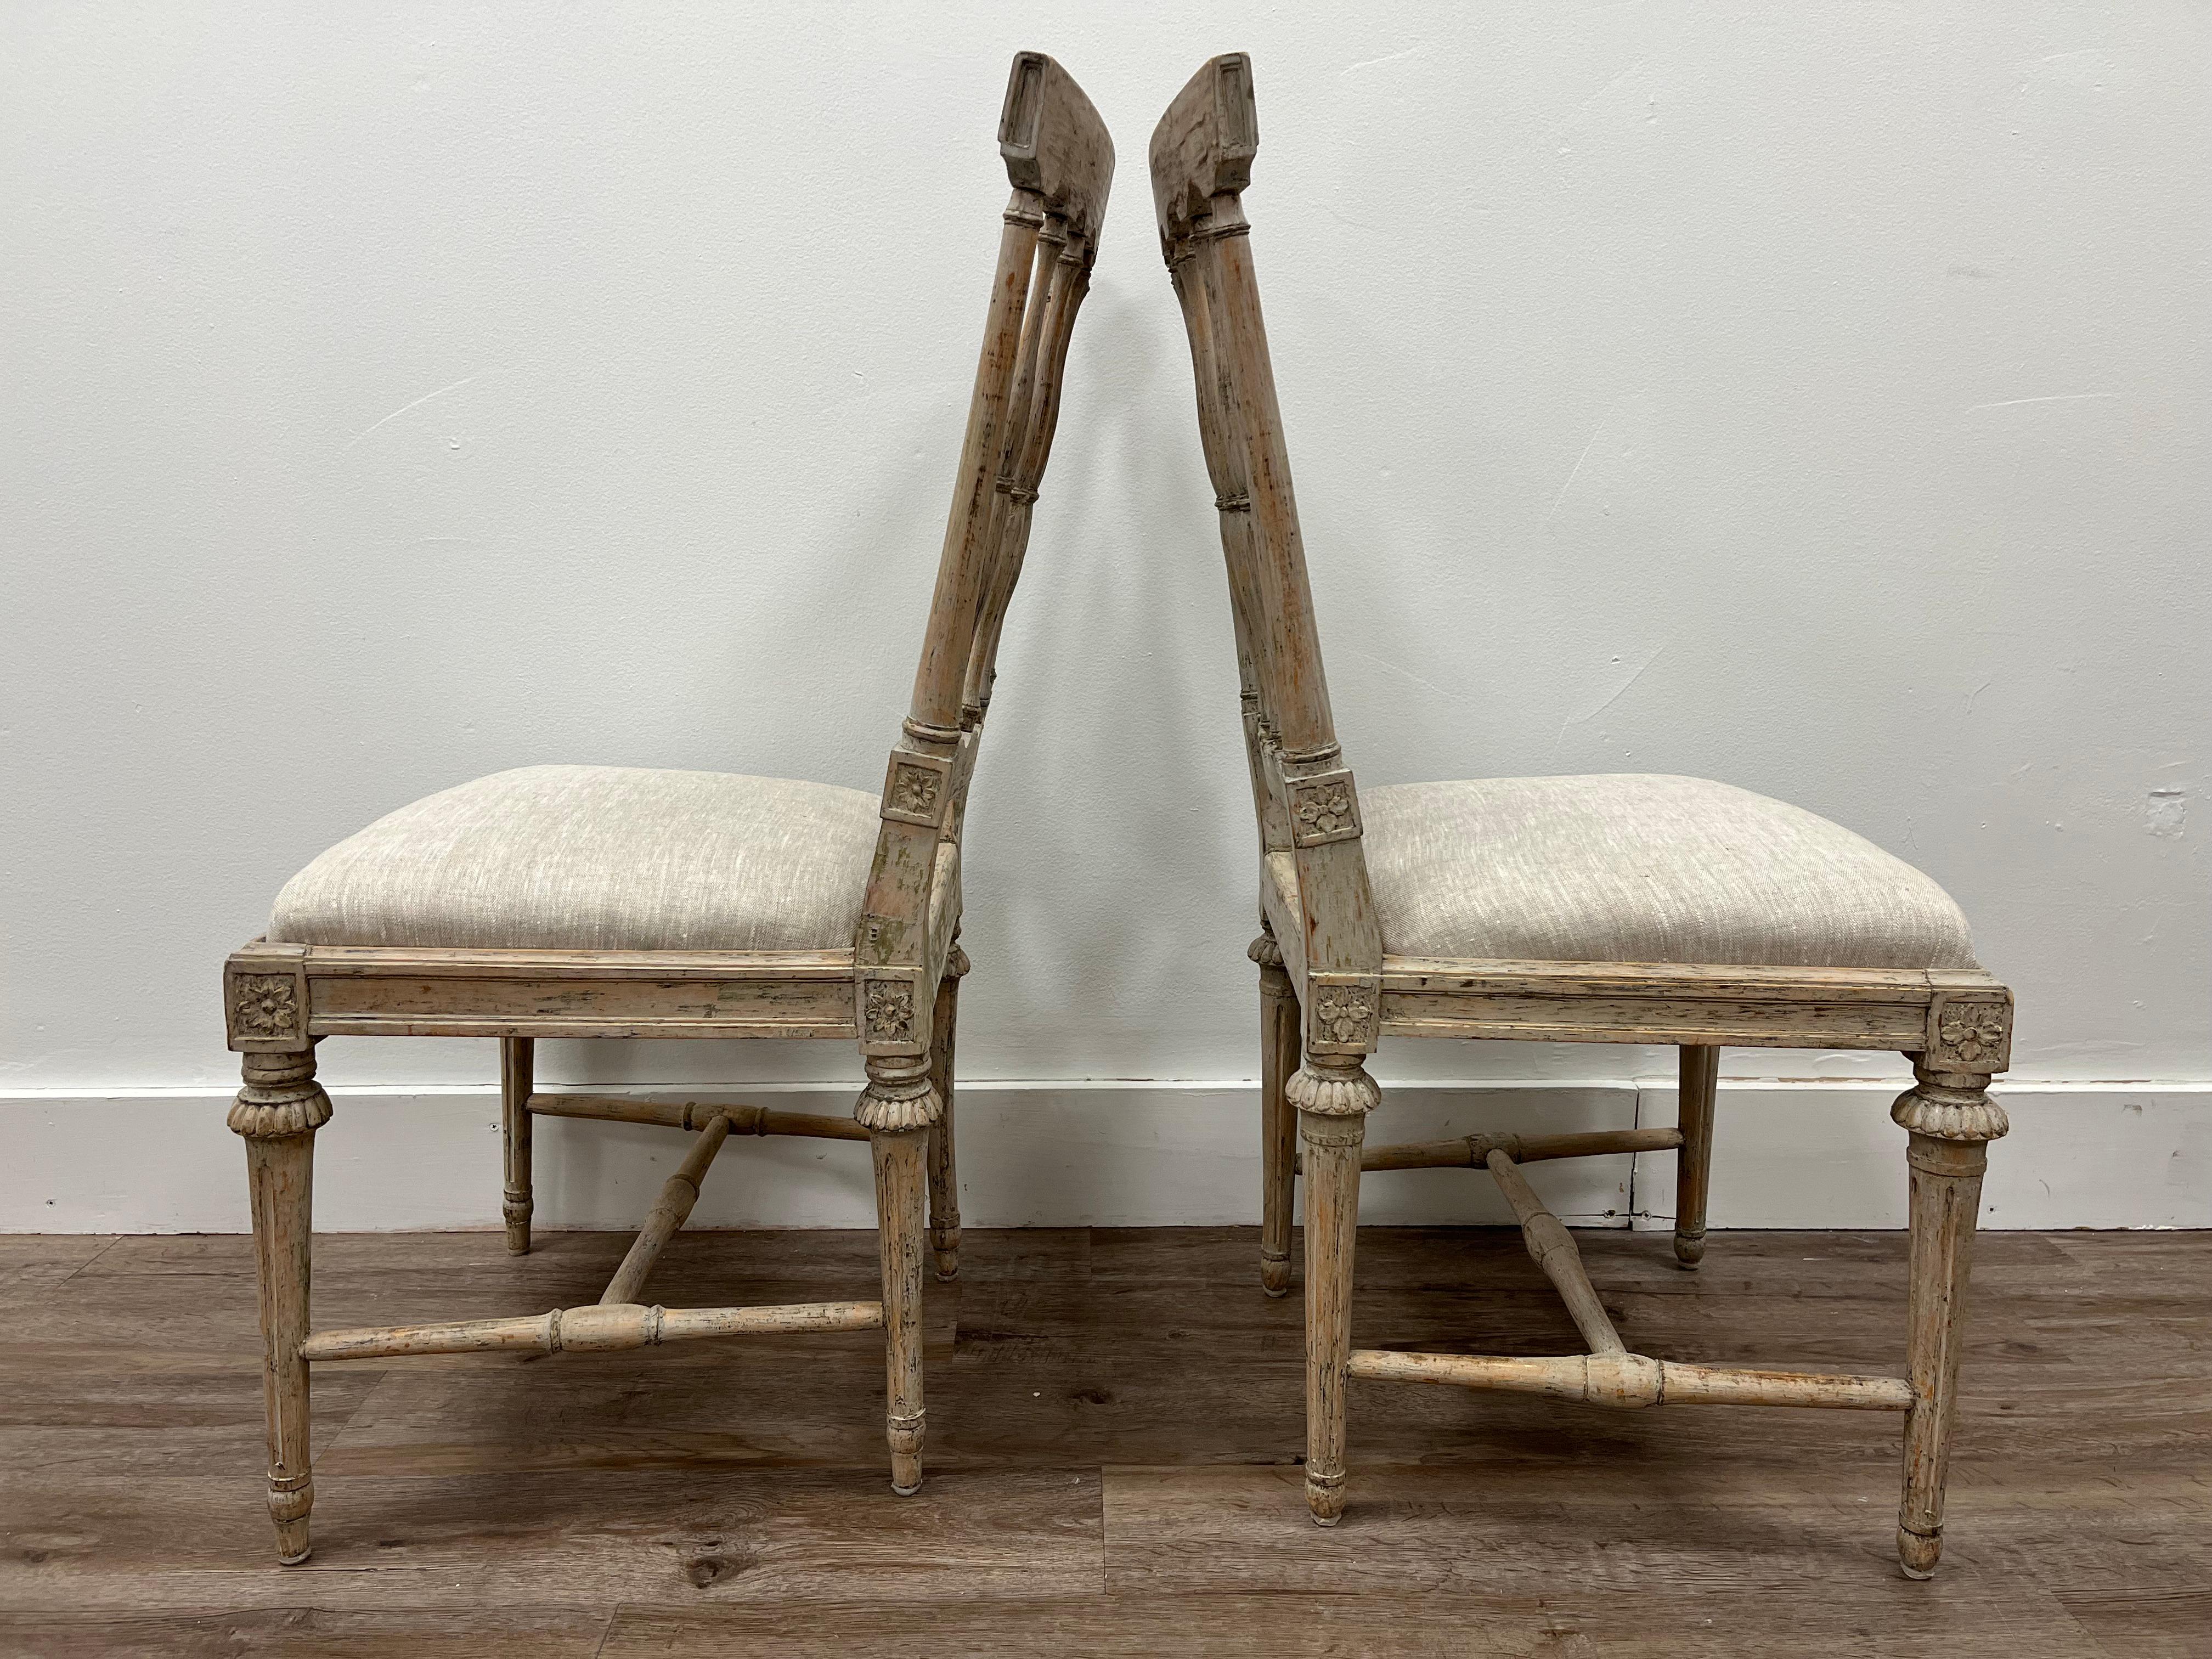 Suédois Deux chaises gustaviennes suédoises similaires du 18ème siècle en vente